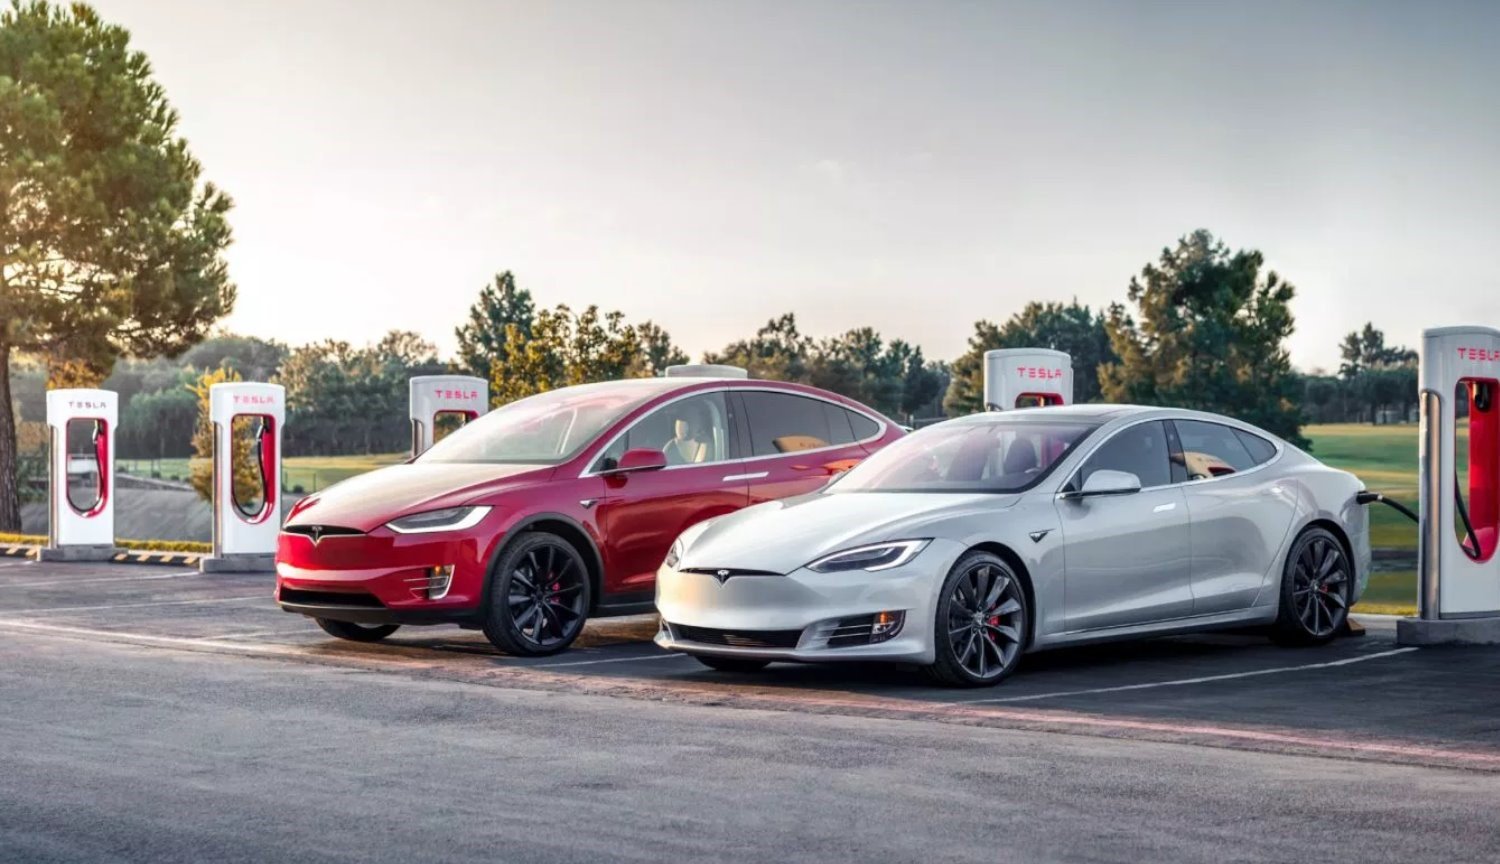 Le auto Tesla Model S e la Model X ha cambiato il nome, caratteristiche e prezzi